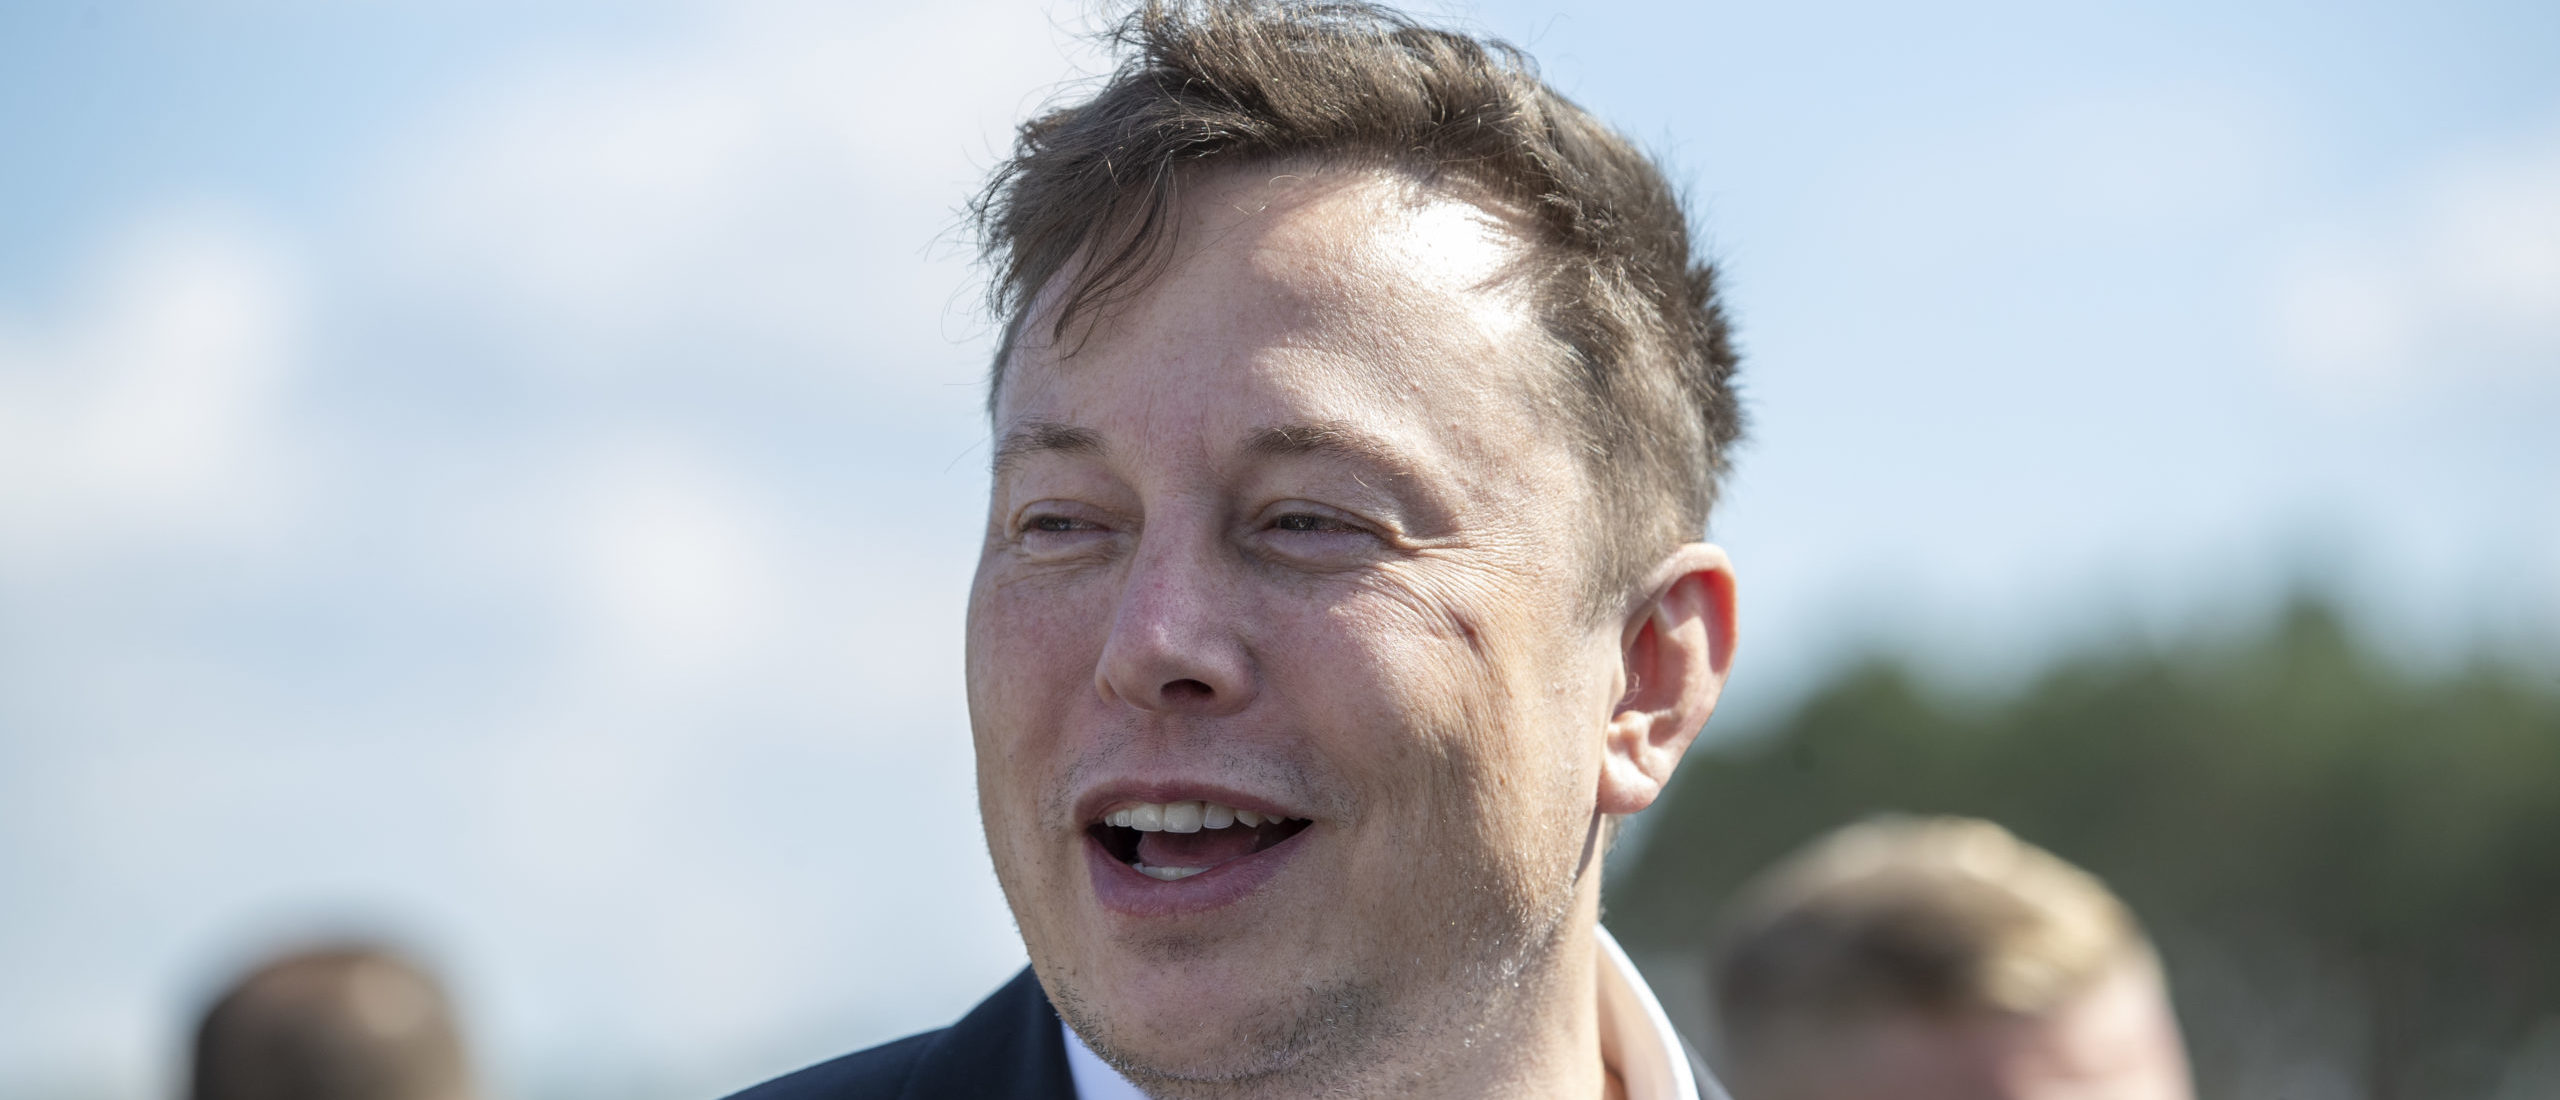 Elon Musk descarga casi $ 1 mil millones en acciones de Tesla, por un total de casi $ 10 mil millones este mes